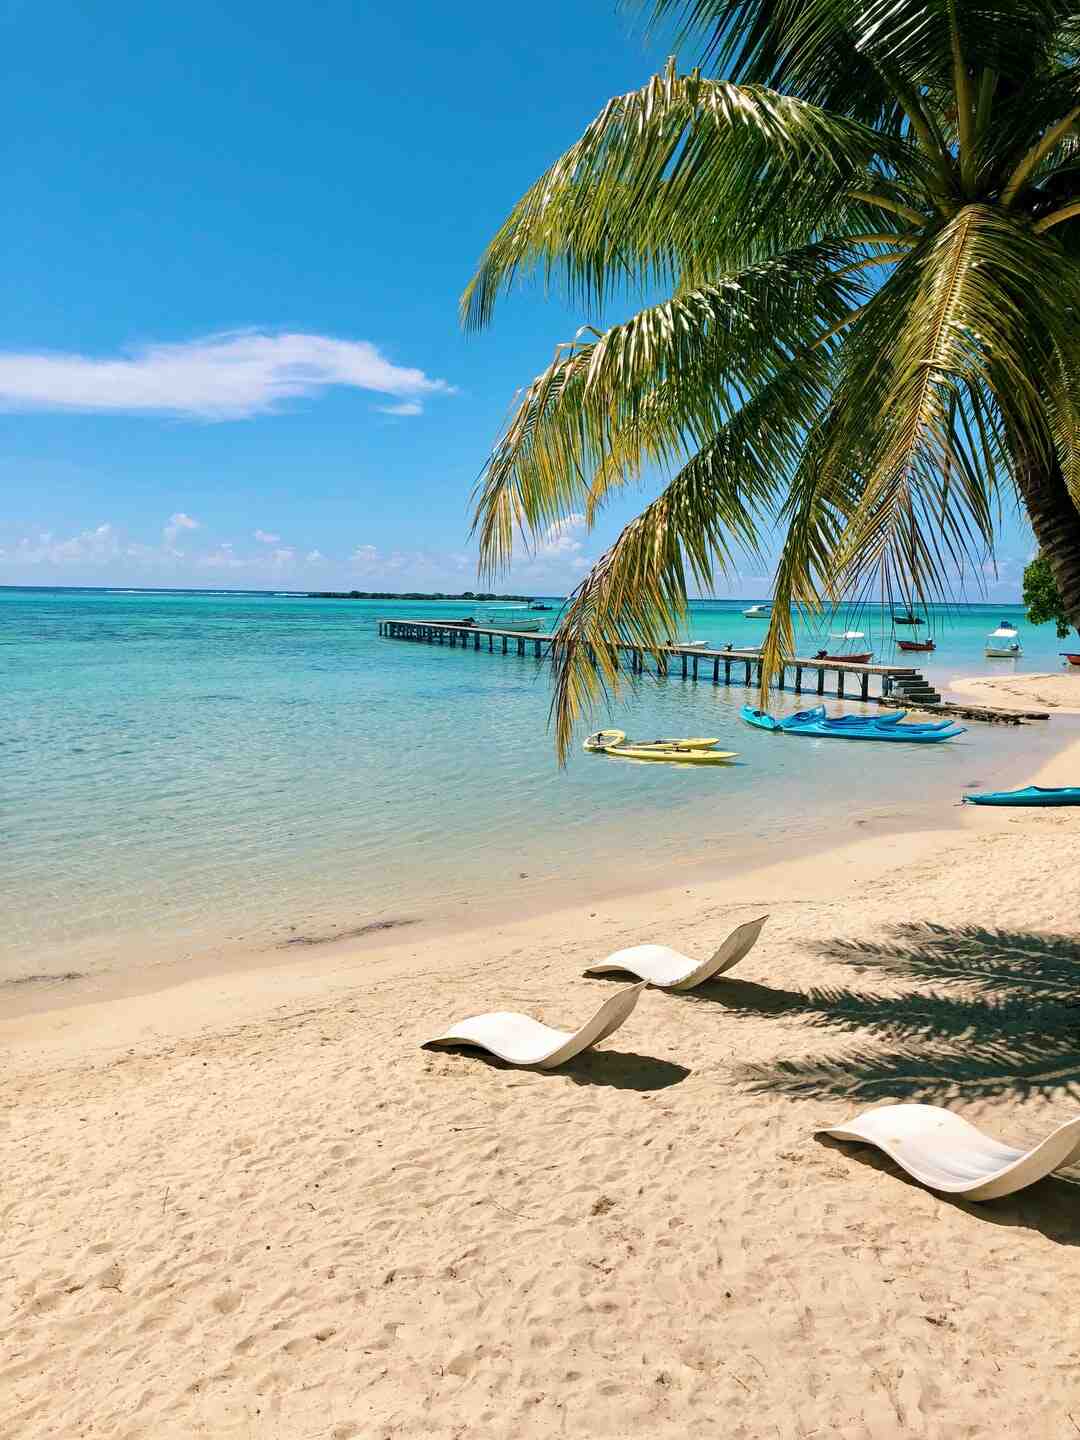 Was ist die schönste Insel auf Tahiti?